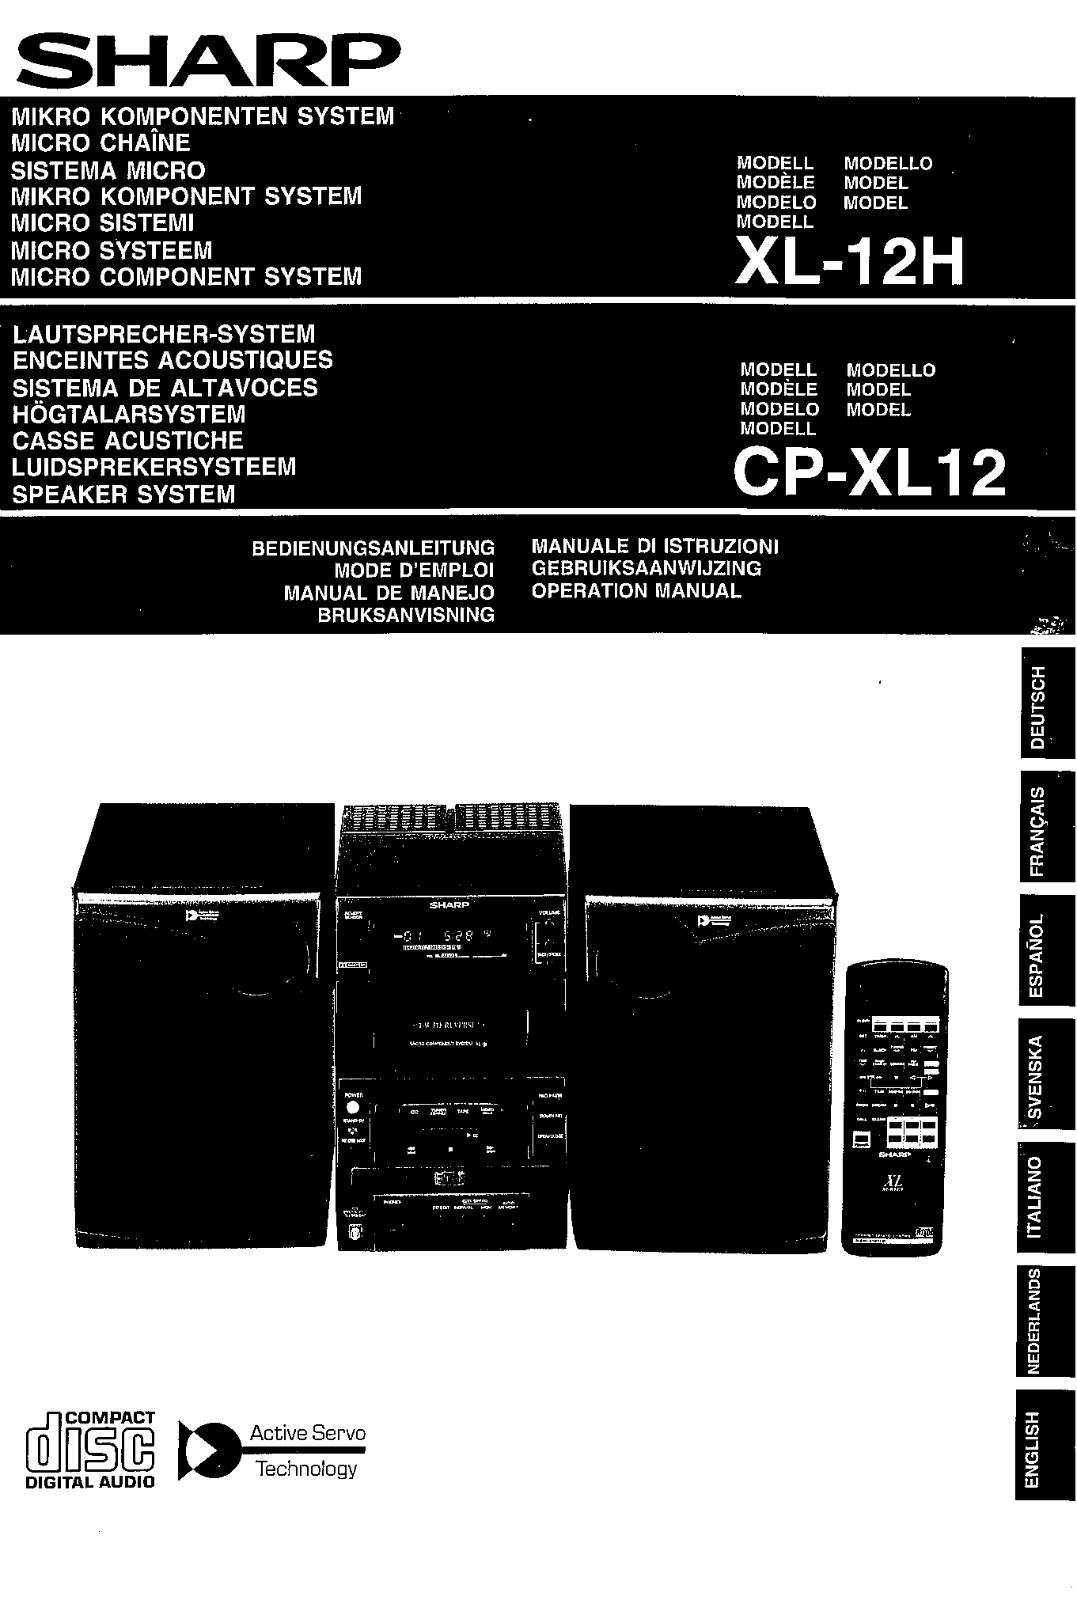 Sharp CP-XL12, XL-12H Manual